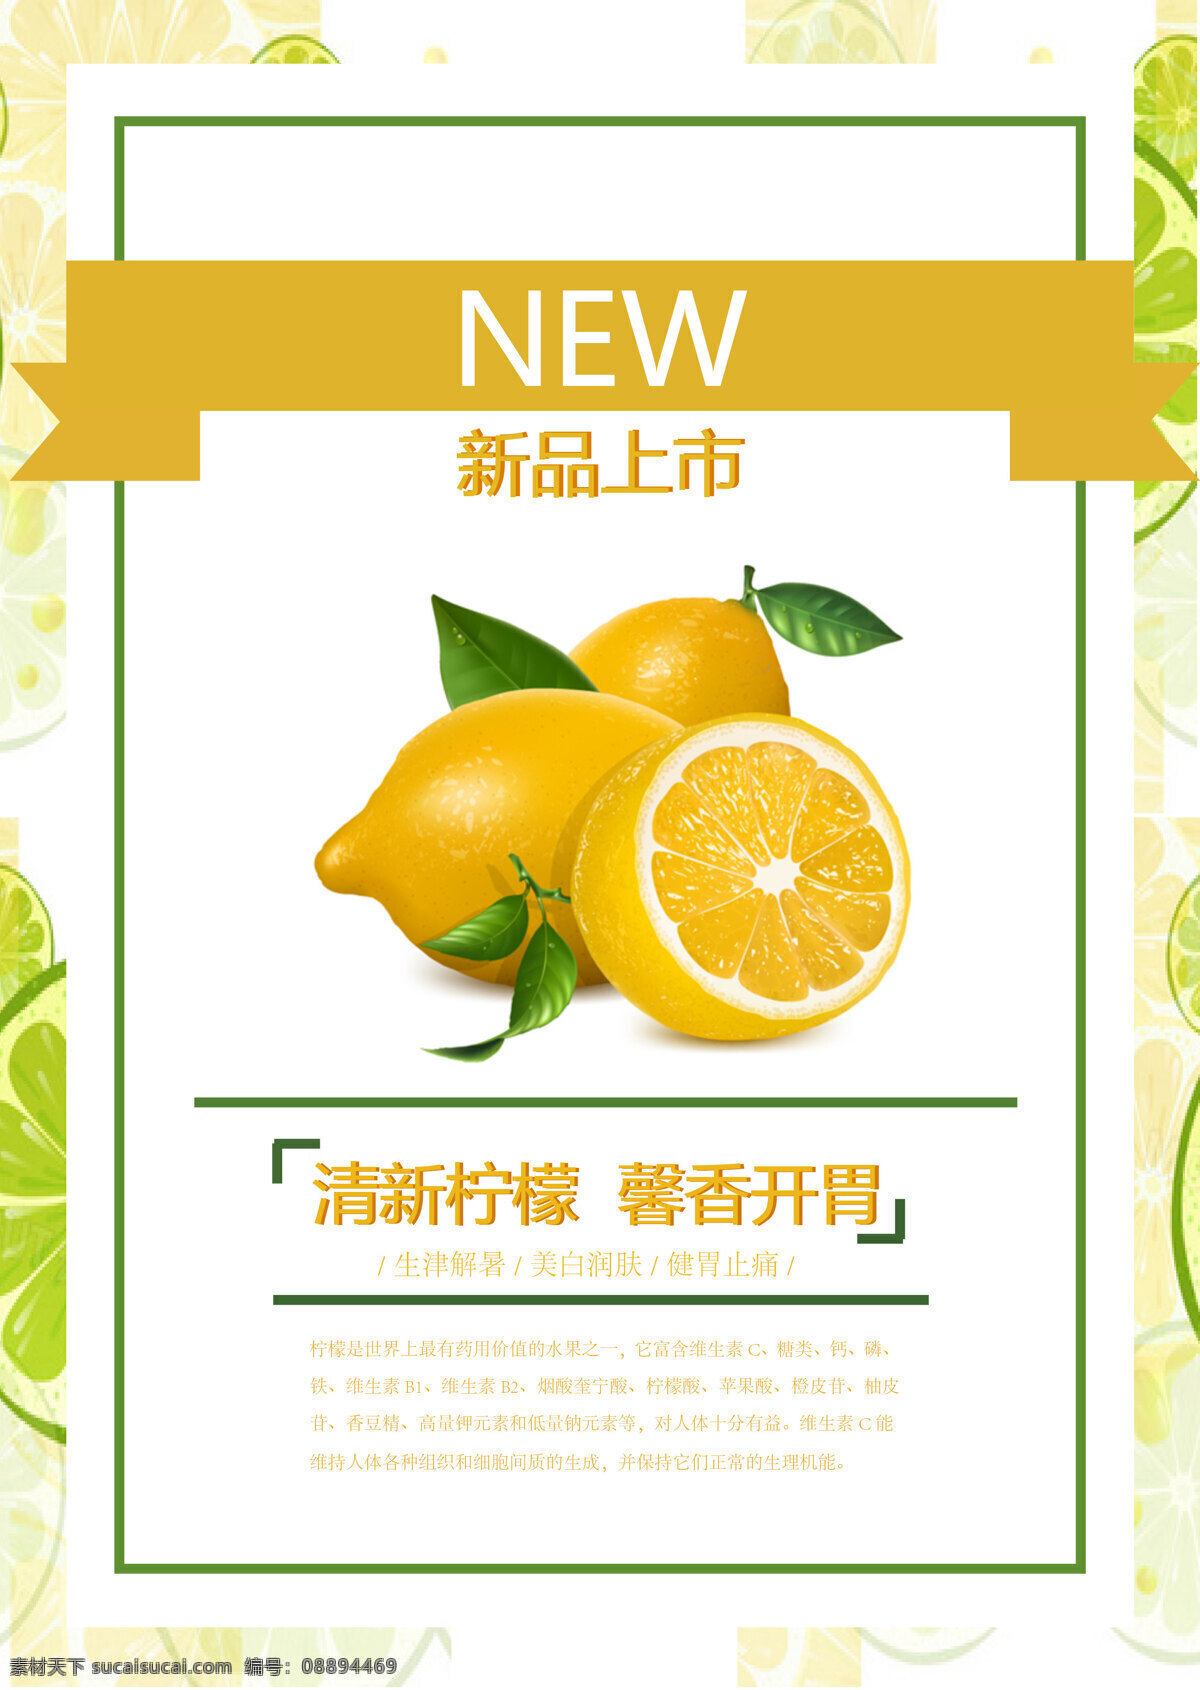 柠檬 水果 促销 宣传海报 图 宣传 海报 清新 广告 详情 新品 模板